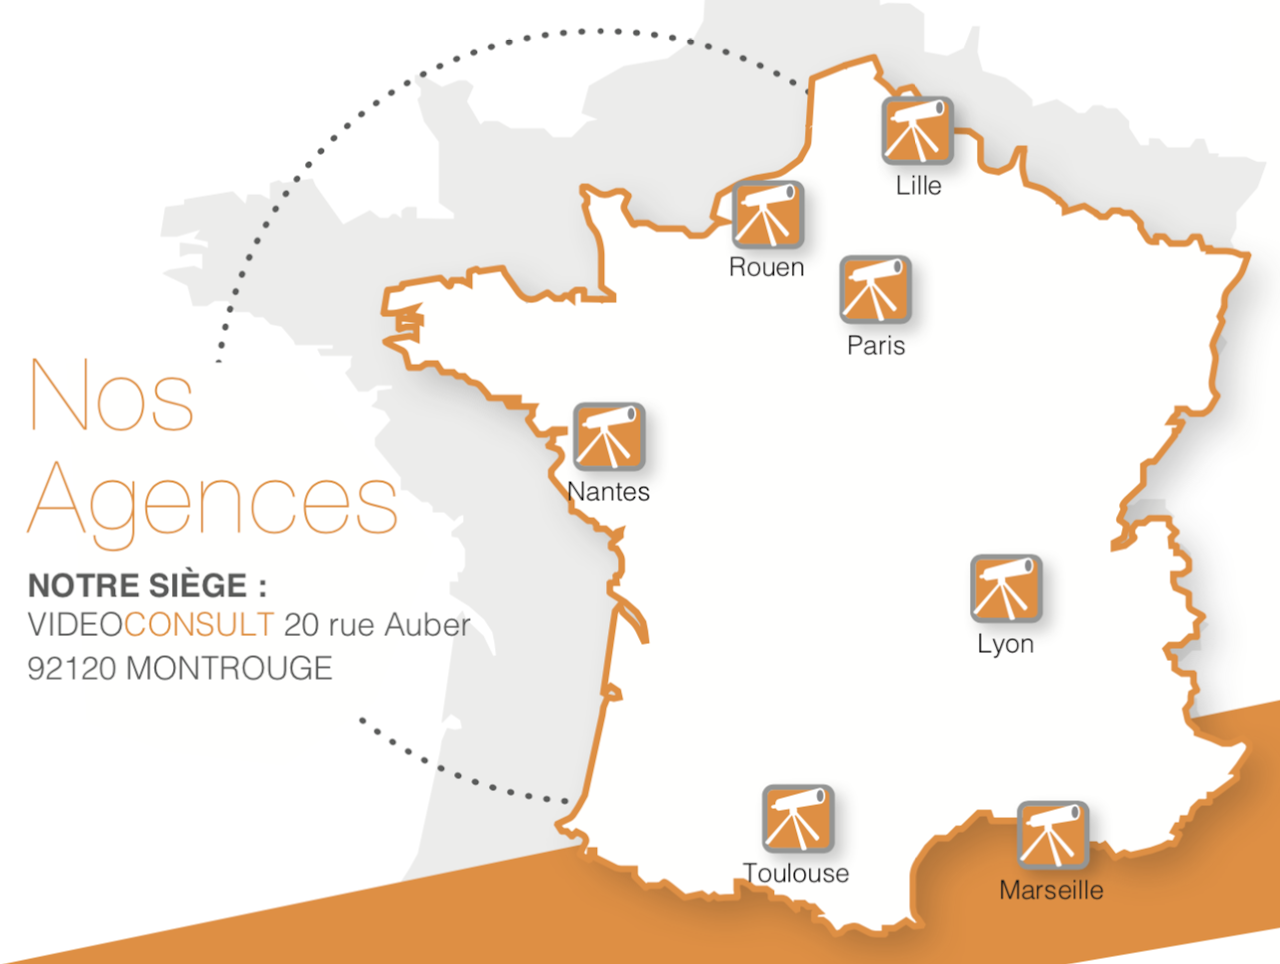 Agences en France VideoConsult - Carte de France avec les emplacements Lille, Nantes, Marseille, Rouen, Paris, Lyon, Toulouse